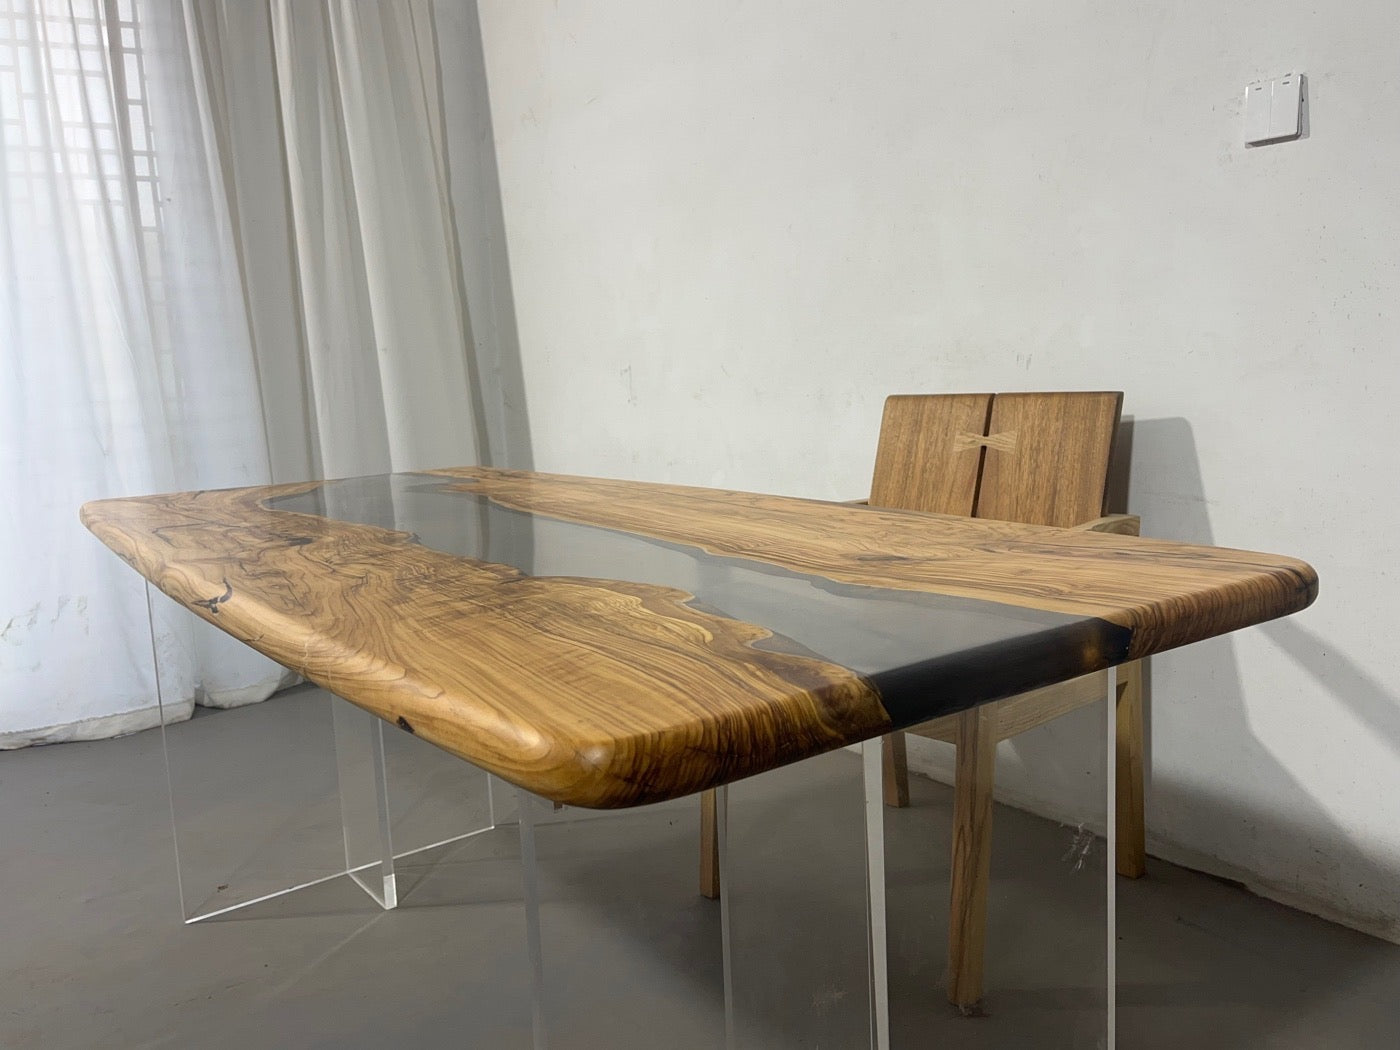 透明エポキシ樹脂テーブルトップ、樹脂エポキシテーブル、テーブル用エポキシ樹脂